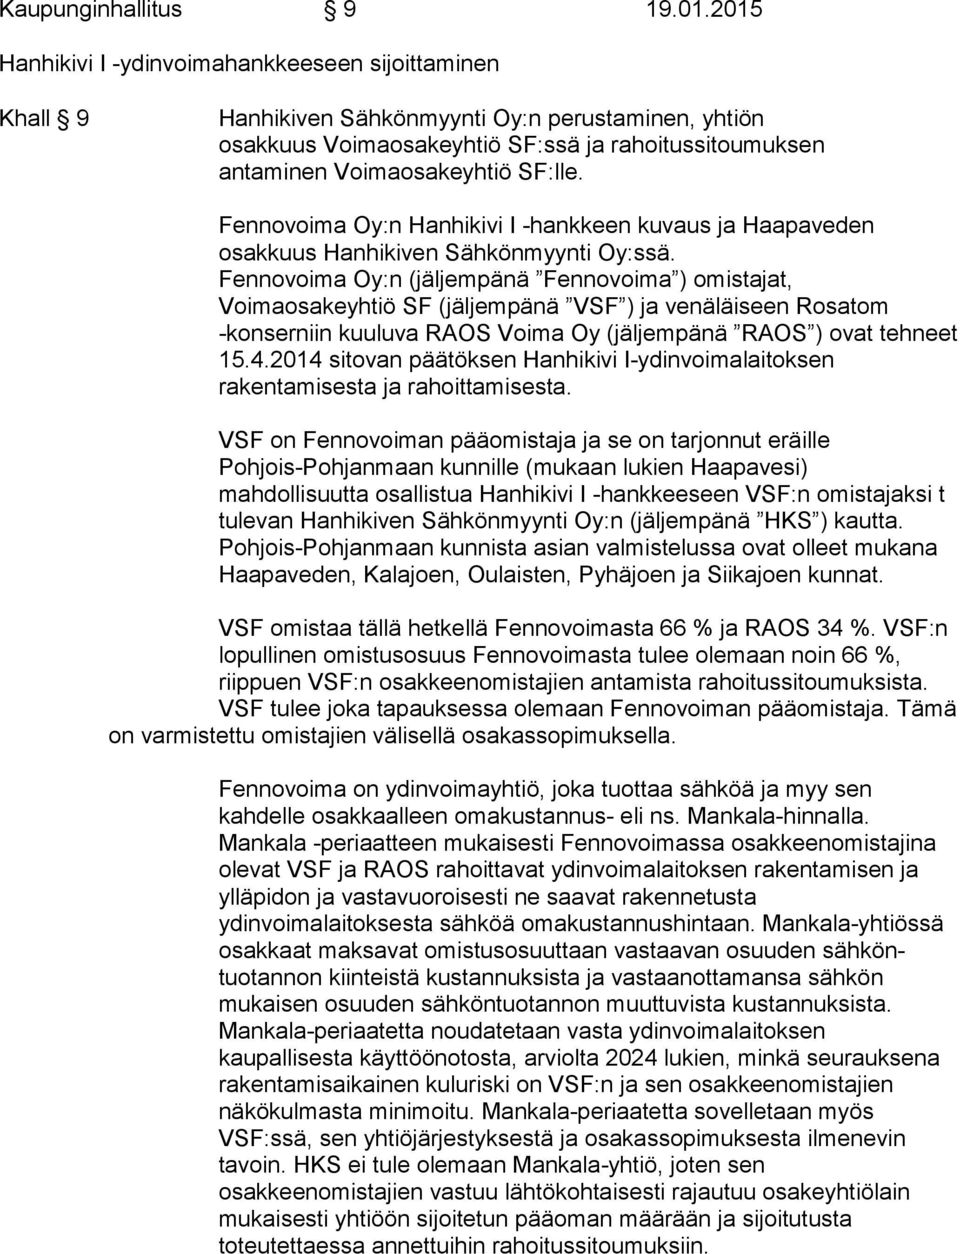 Fennovoima Oy:n Hanhikivi I -hankkeen kuvaus ja Haapaveden osakkuus Hanhikiven Sähkönmyynti Oy:ssä.